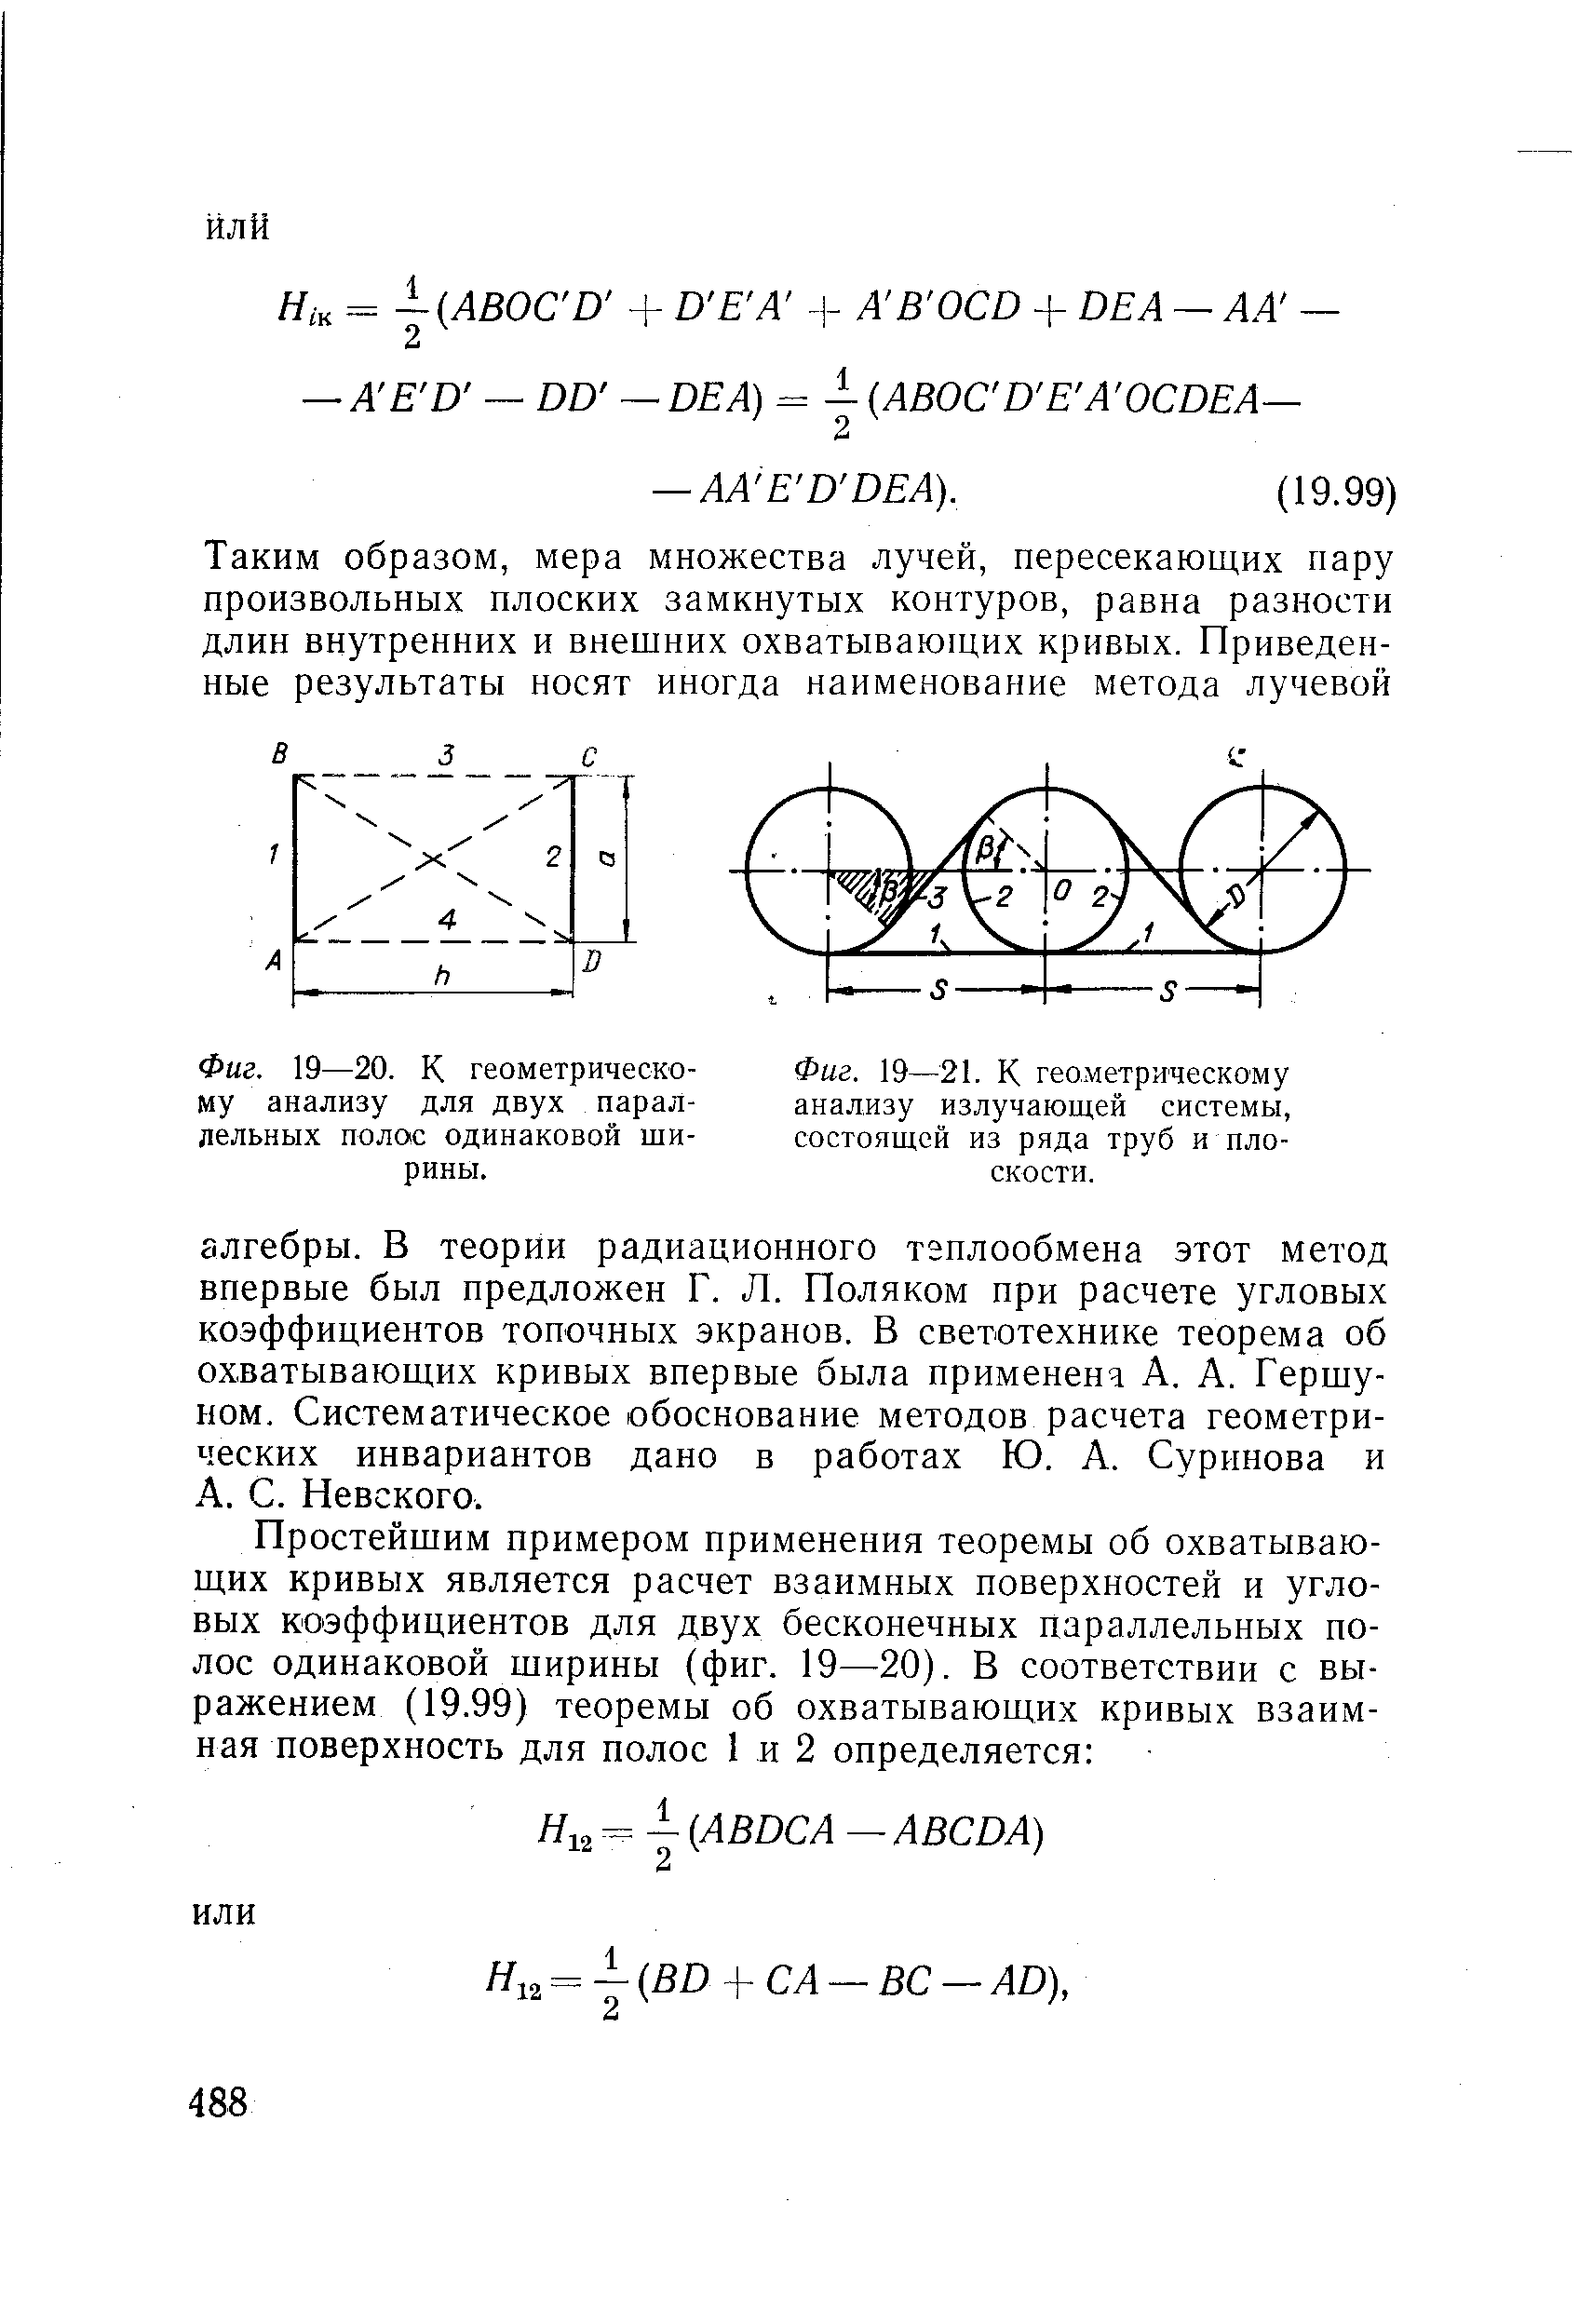 Фиг. 19—20. К геометрическому анализу для двух параллельных полос одинаковой ширины.
